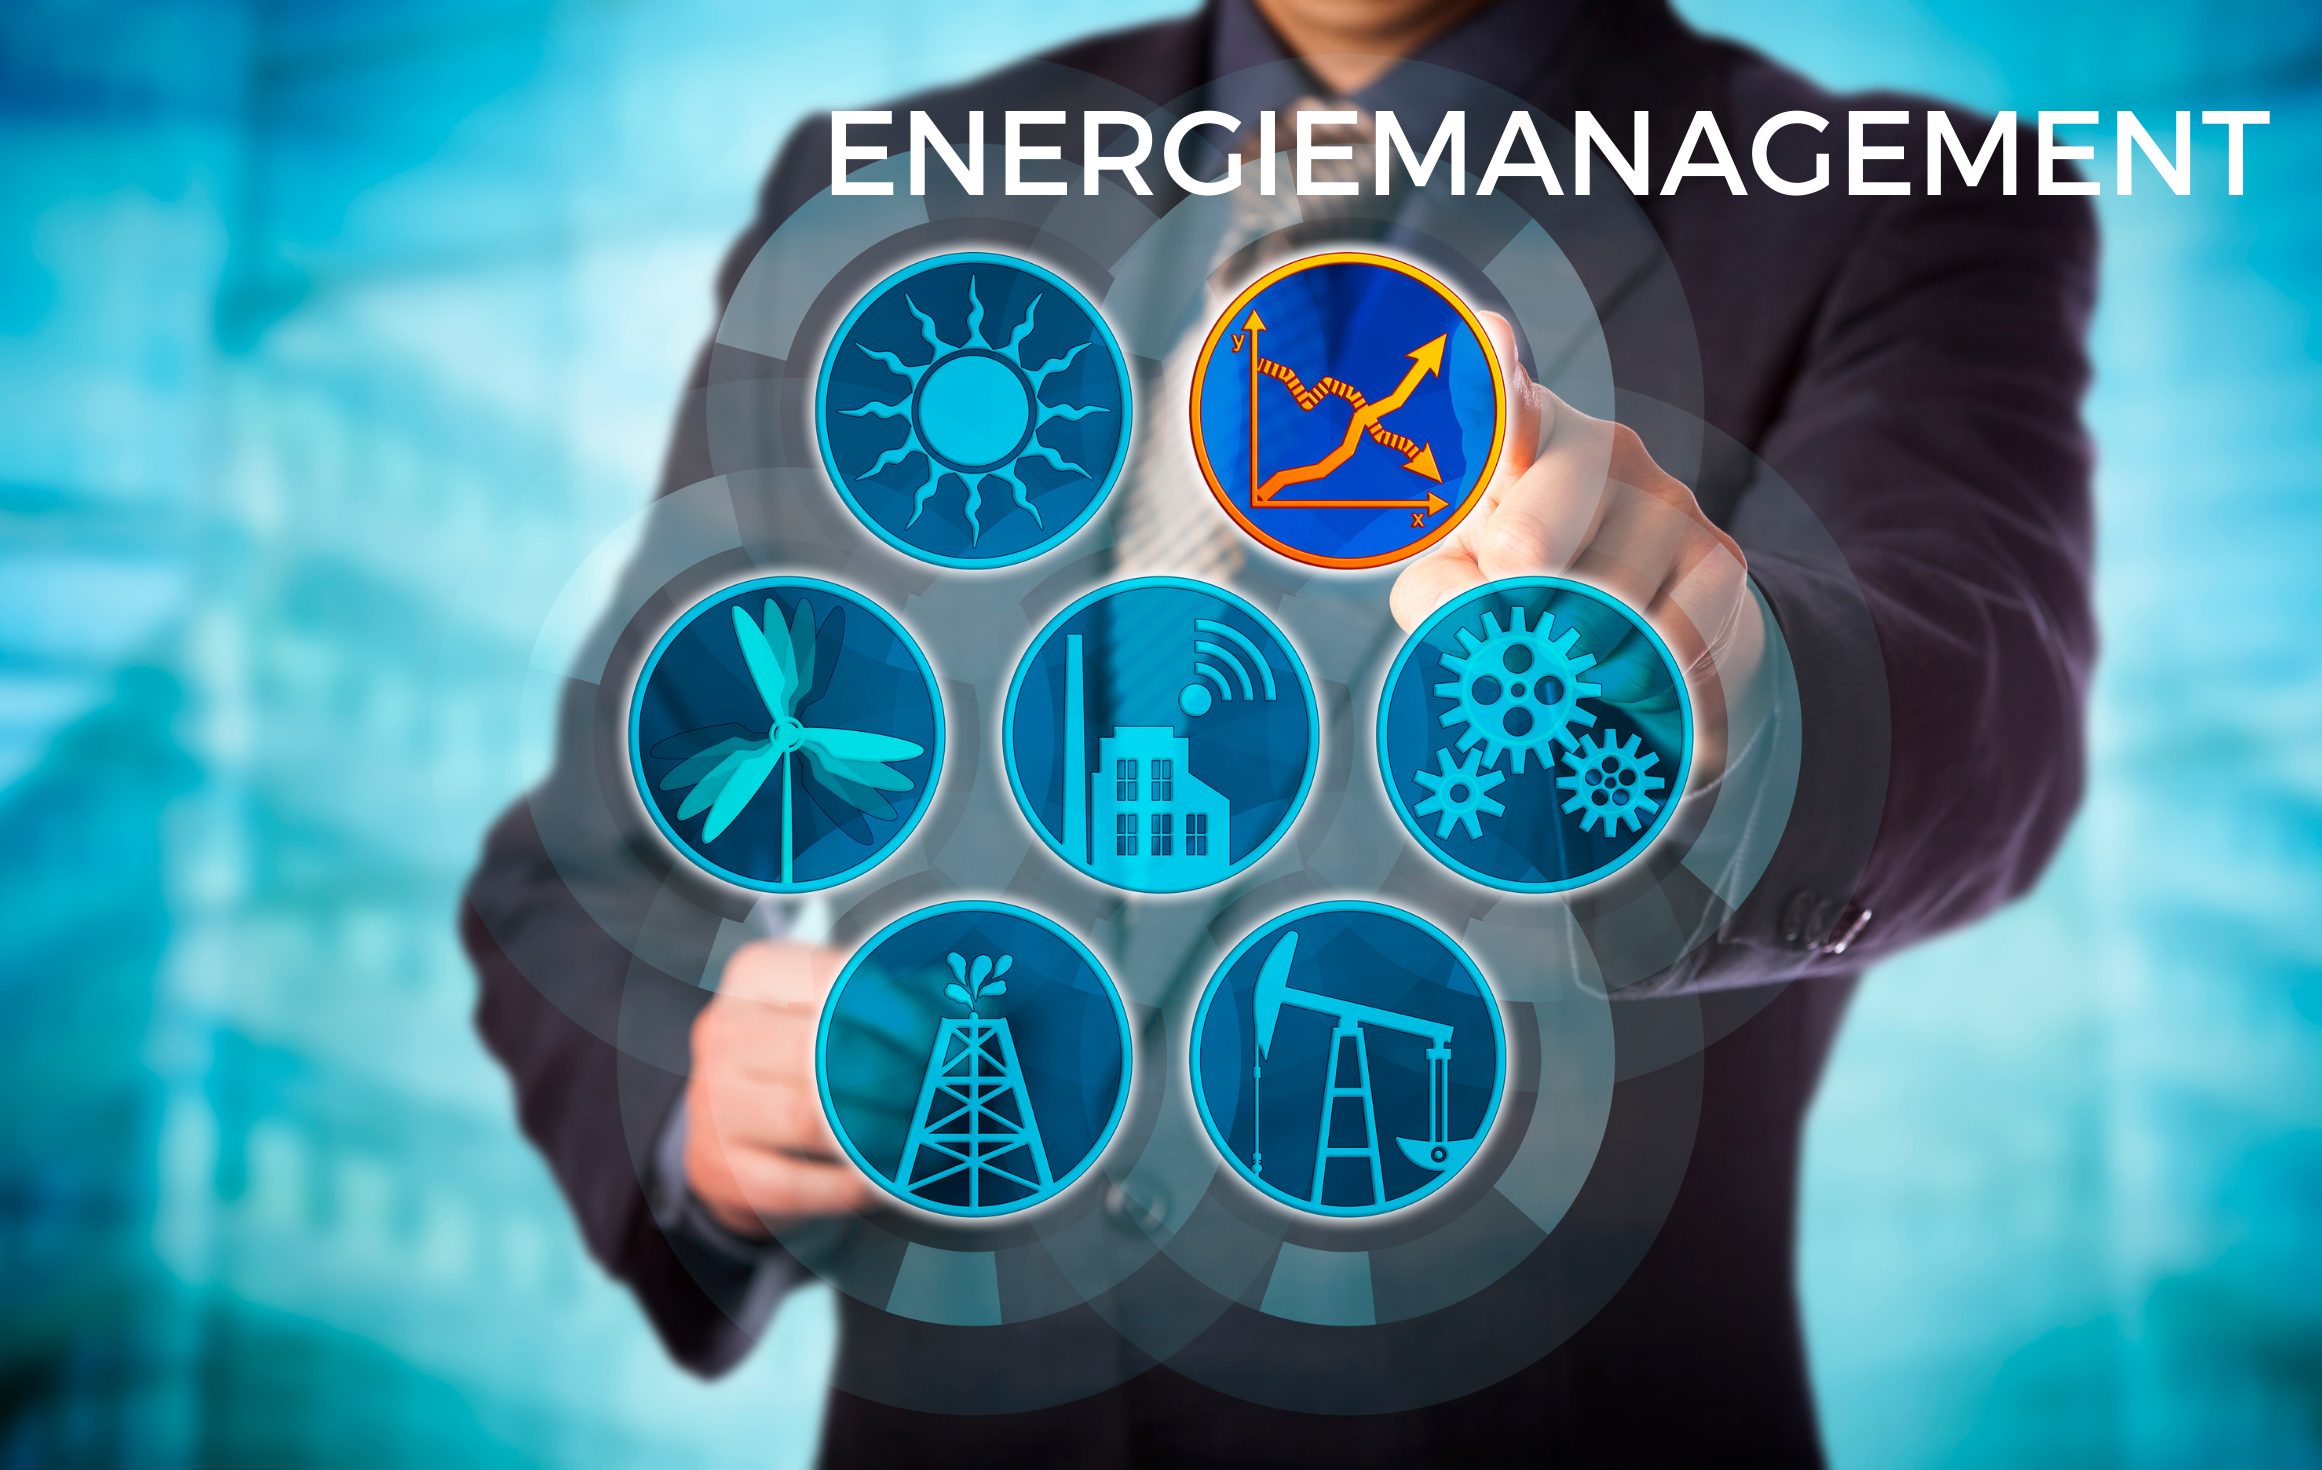 Energiemanagement symbolische Darstellung